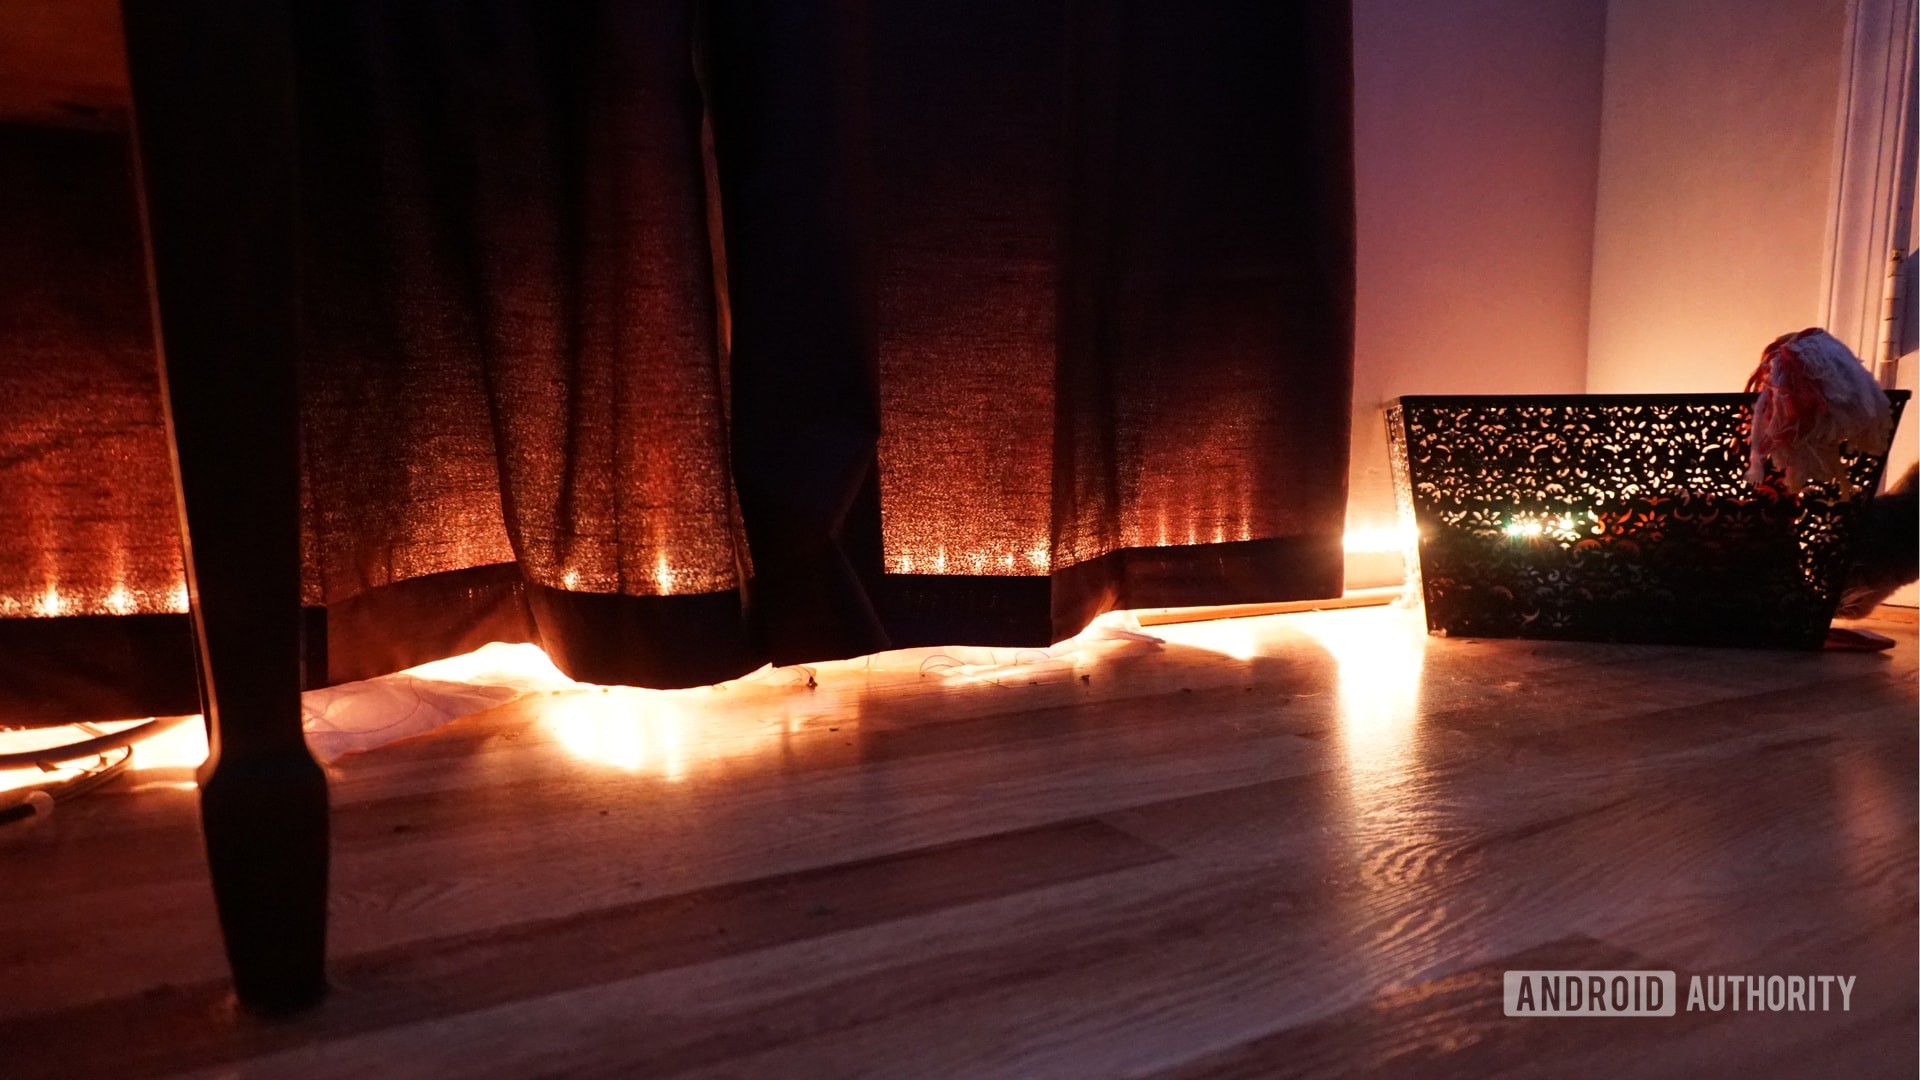 Govee LED Light Strip in Bedroom